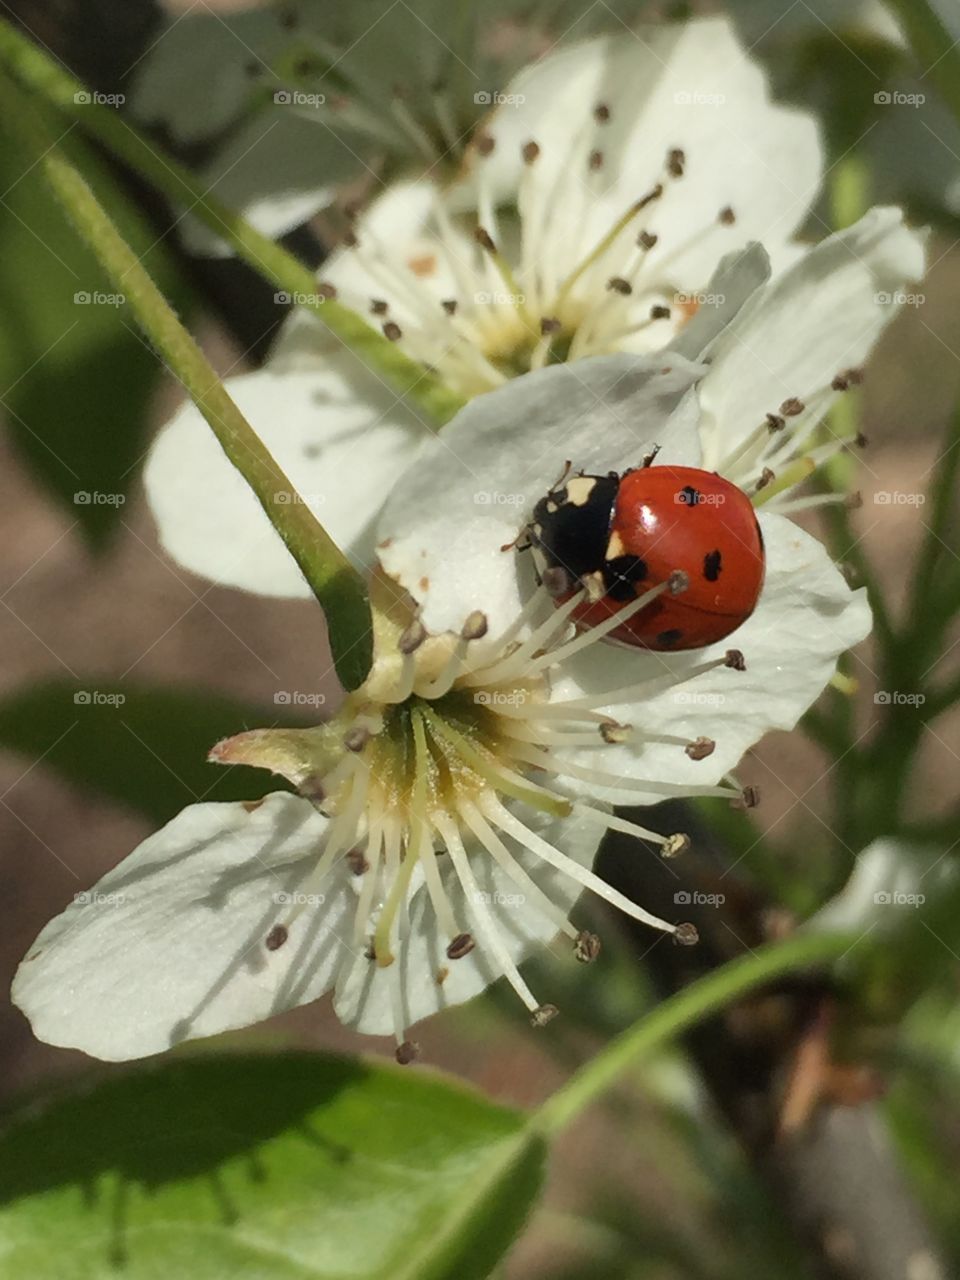 Ladybug on white flower